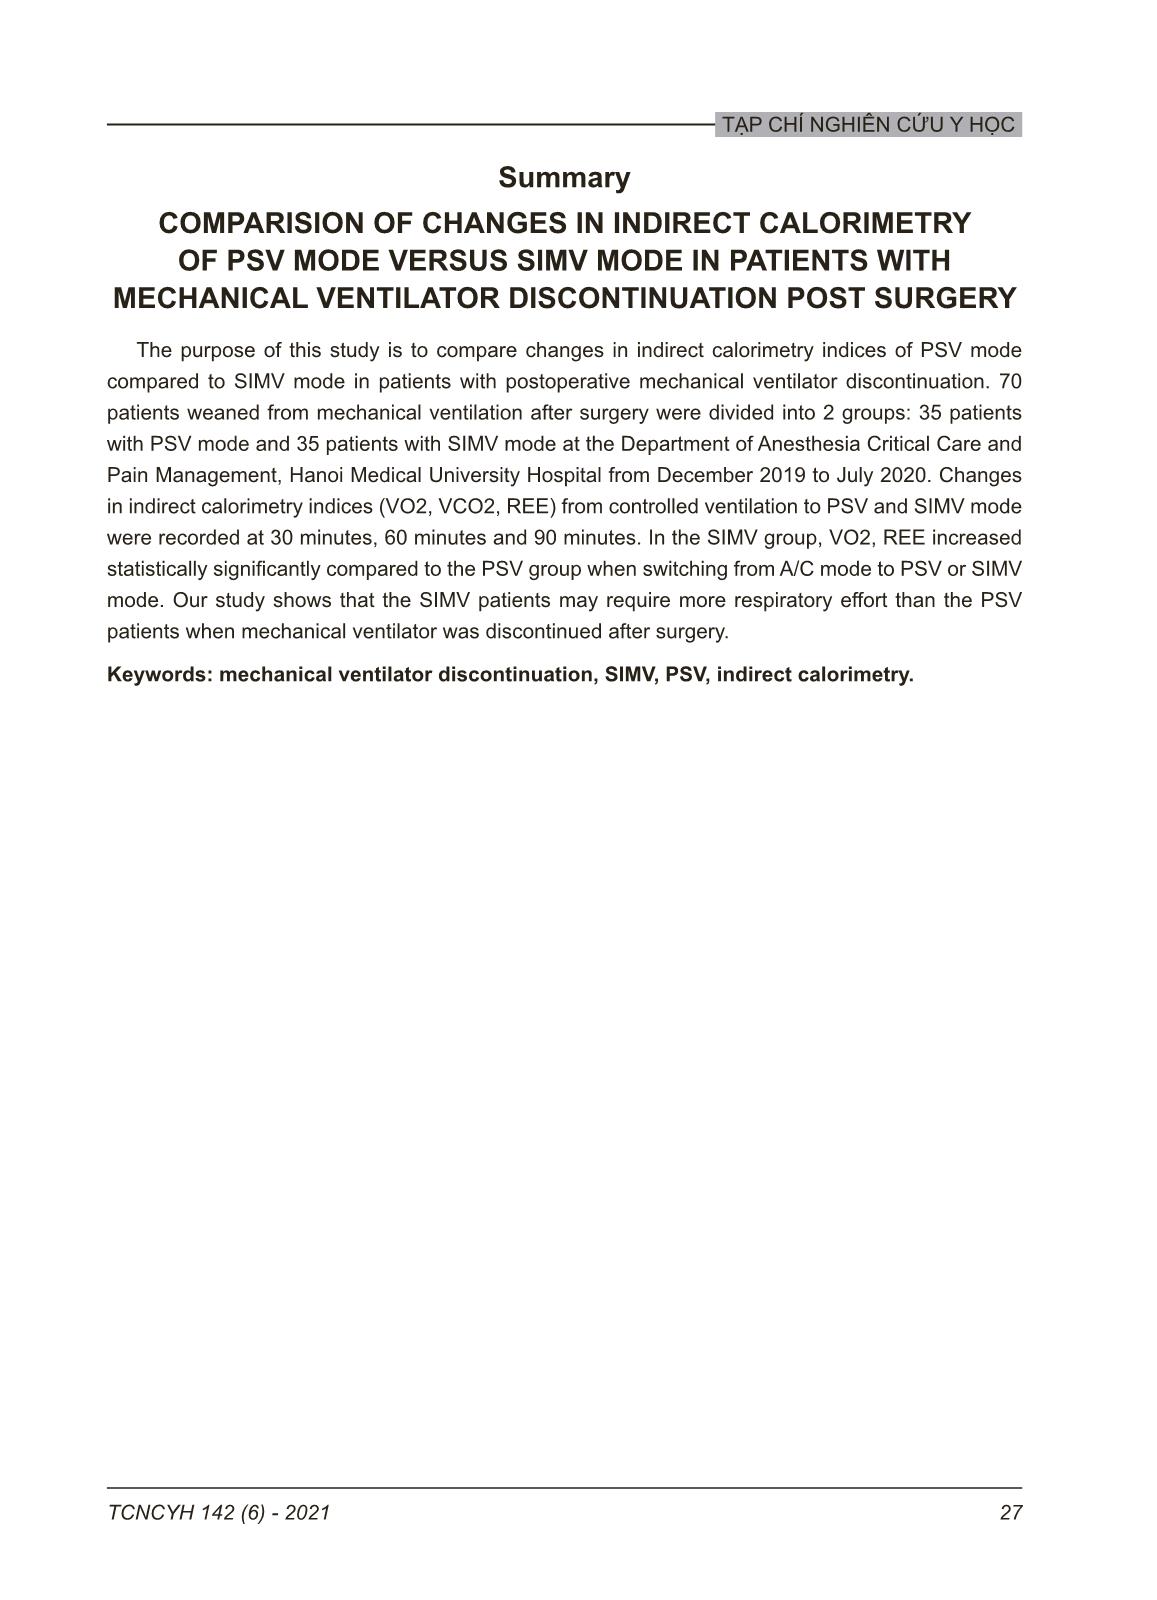 So sánh ảnh hưởng trên năng lượng gián tiếp của phương thức psv so với phương thức SIMV ở bệnh nhân bỏ thở máy sau mổ trang 7